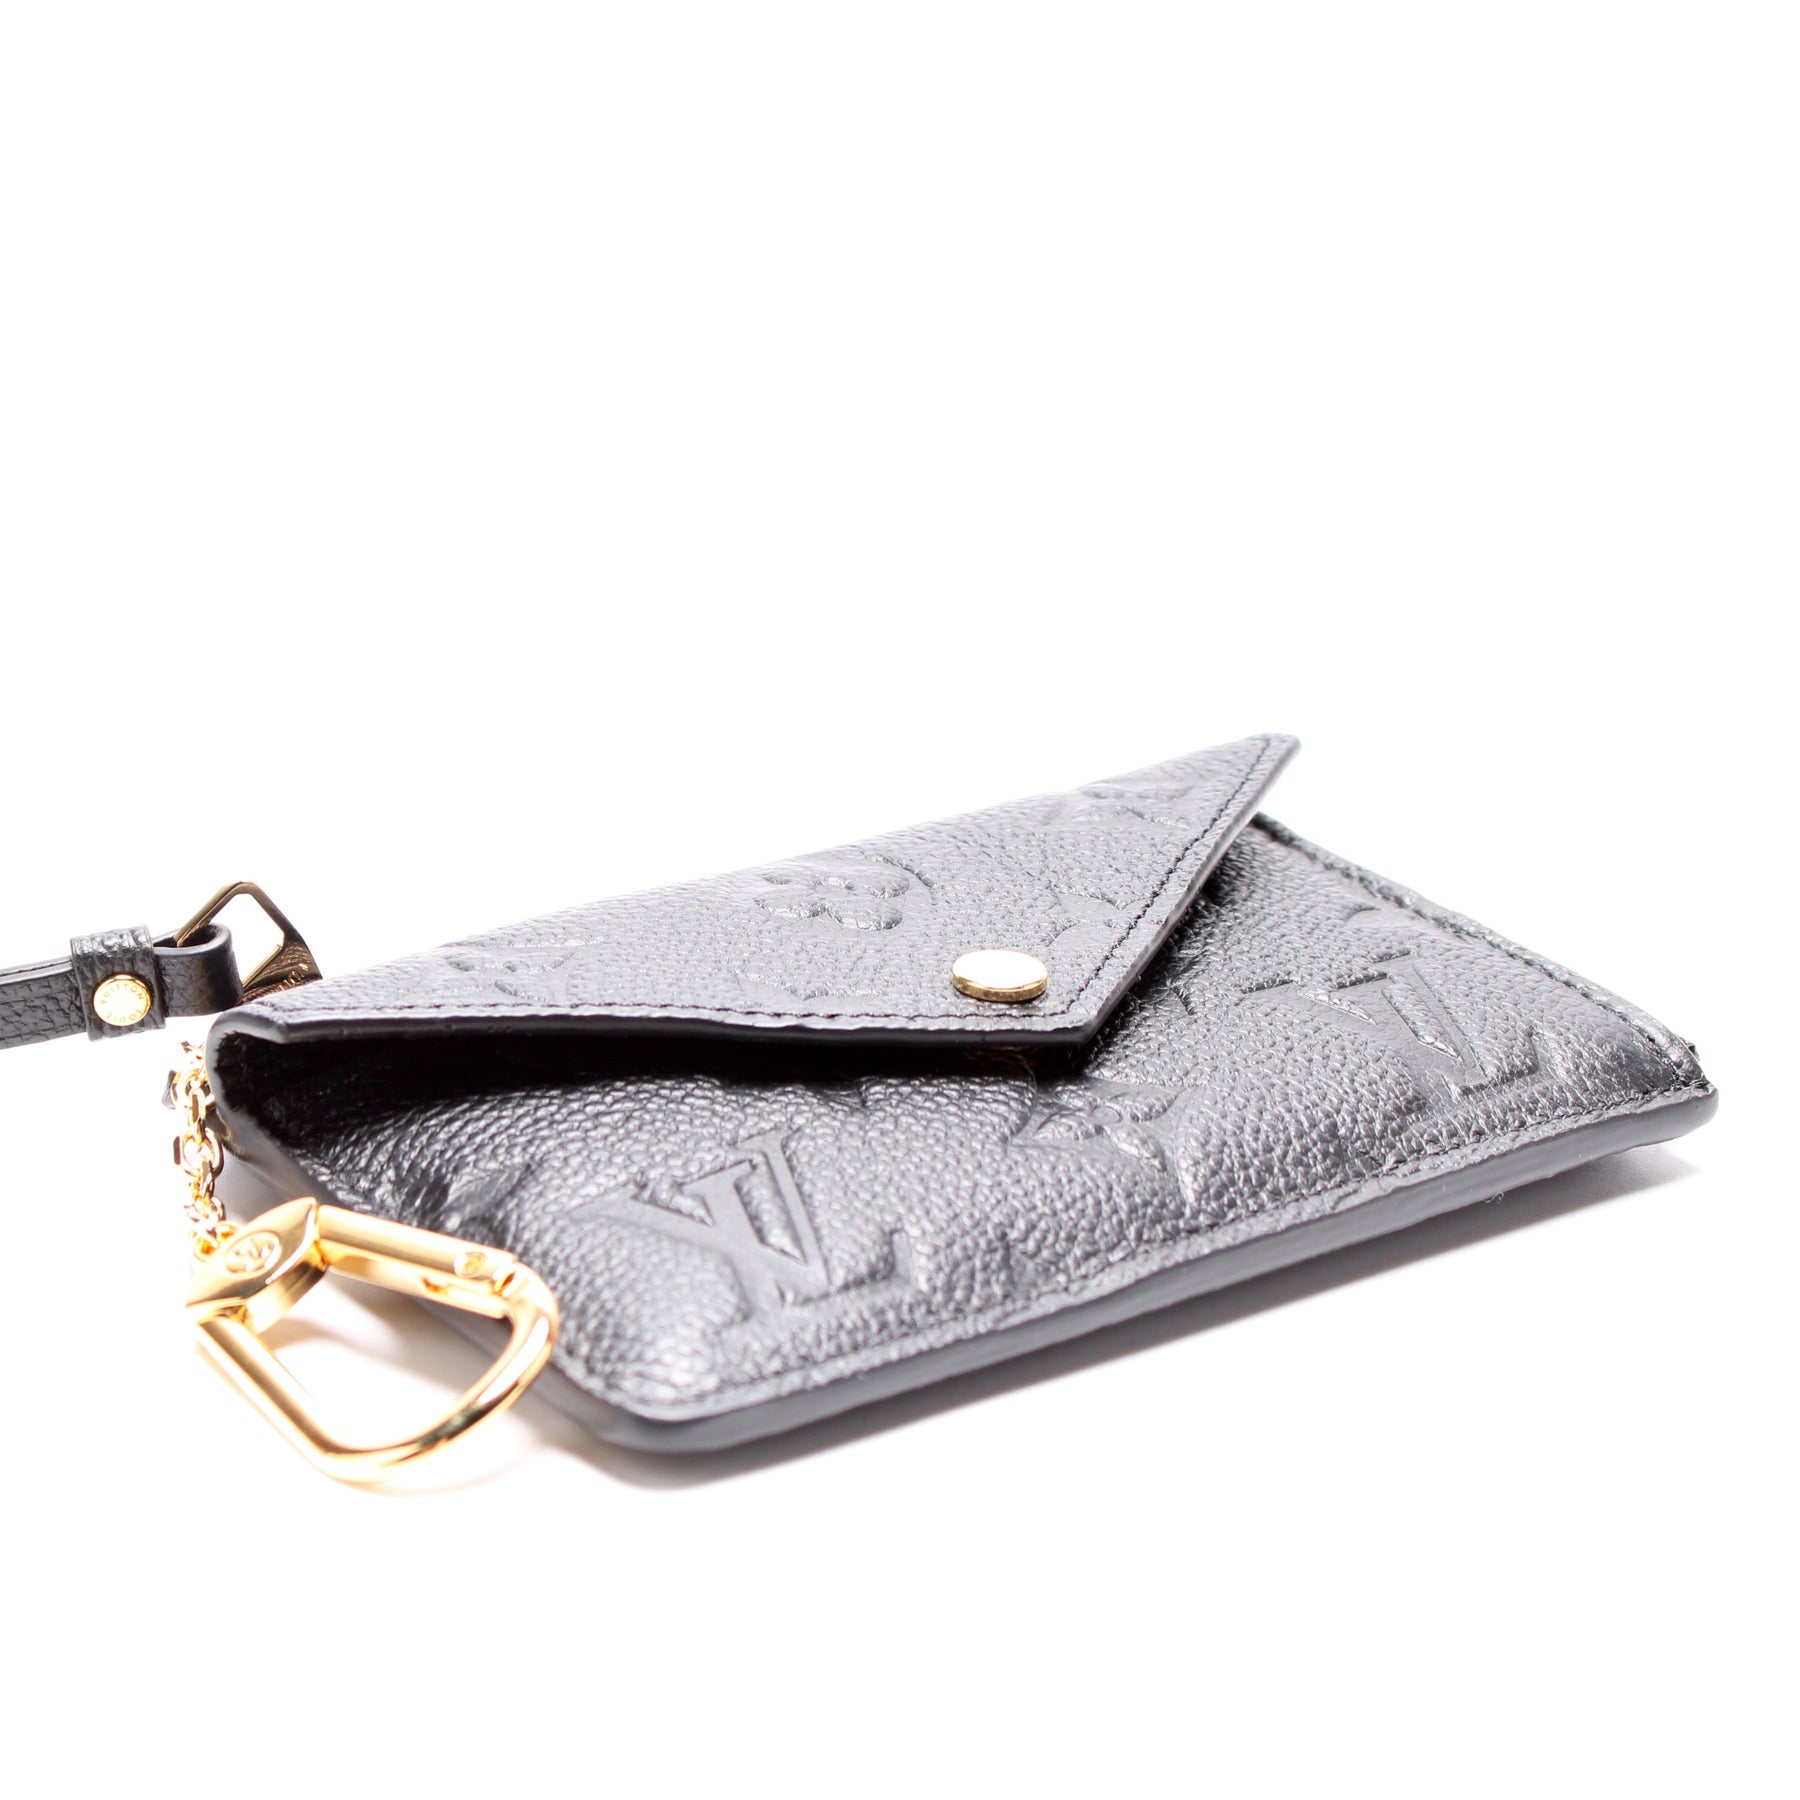 Card Holder Recto Verso Empreinte – Keeks Designer Handbags